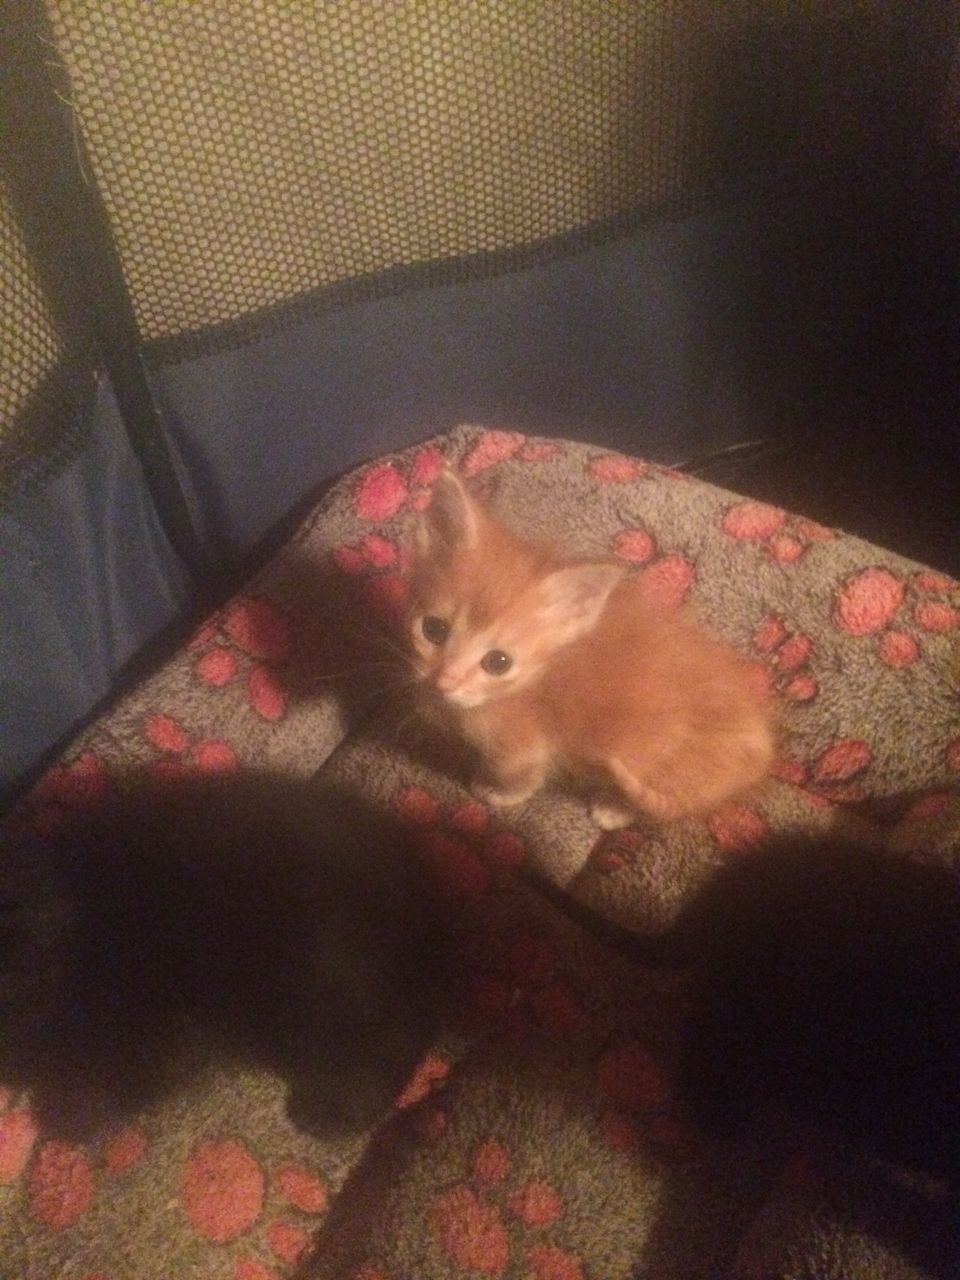 Stunning Munchkin Kittens Available